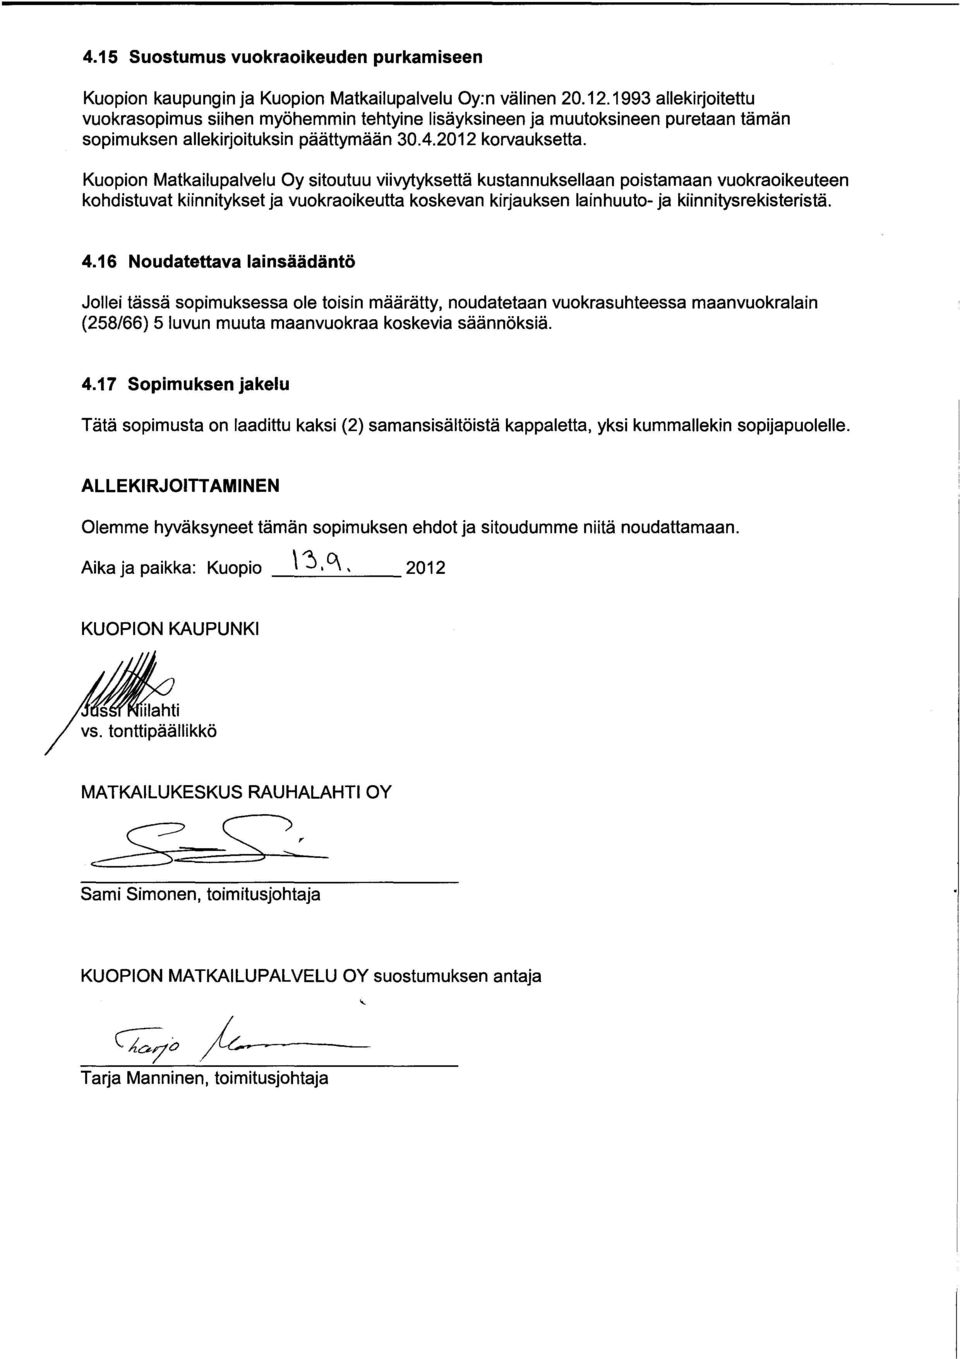 Kuopion Matkailupalvelu Oy sitoutuu viivytyksettä kustannuksellaan poistamaan vuokraoikeuteen kohdistuvat kiinnitykset ja vuokraoikeutta koskevan kirjauksen lainhuuto- ja kiinnitysrekisteristä. 4.